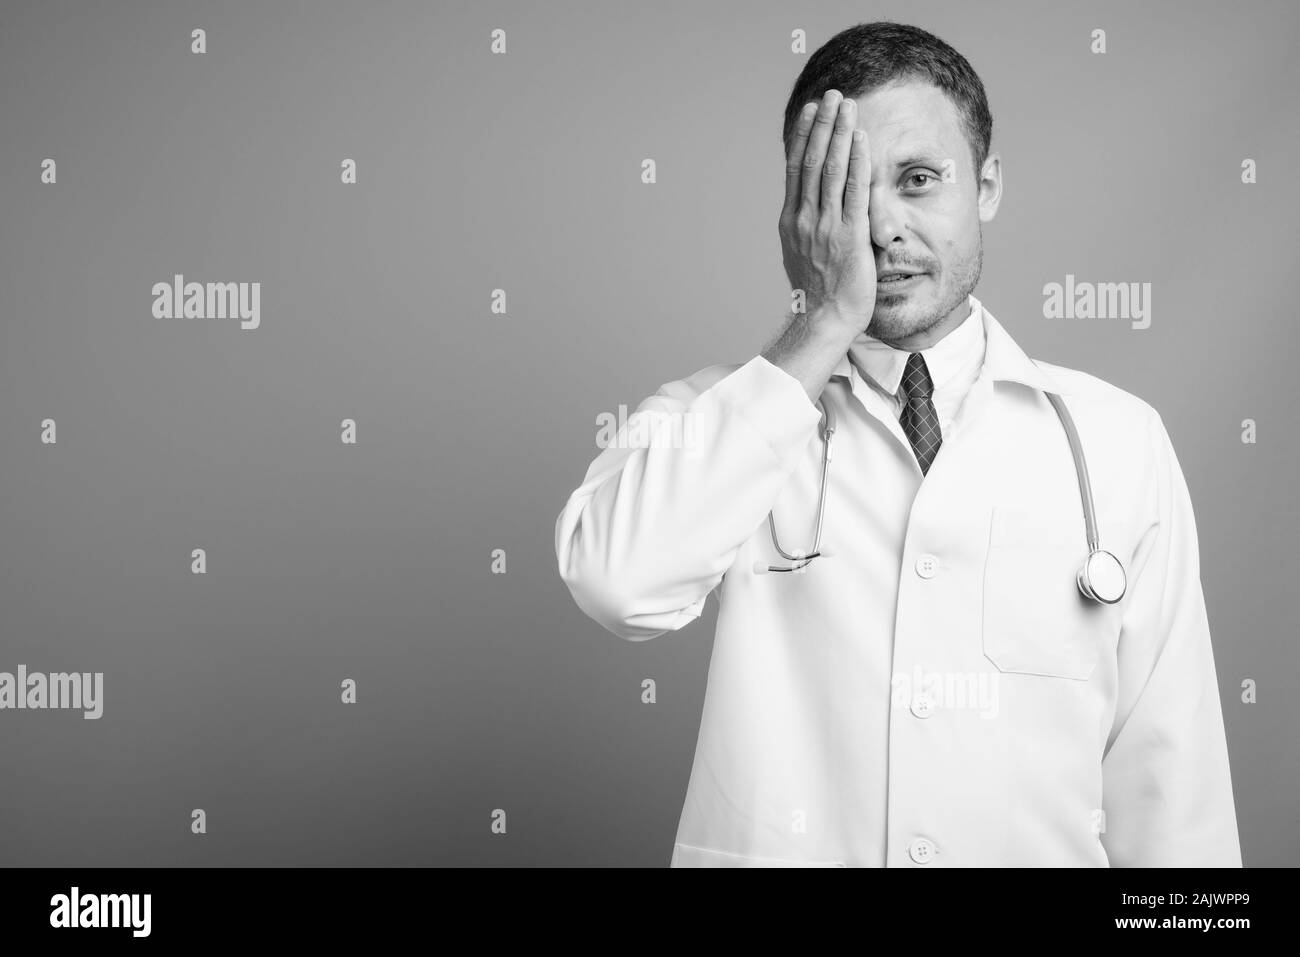 Ritratto di uomo bello medico contro uno sfondo grigio Foto Stock